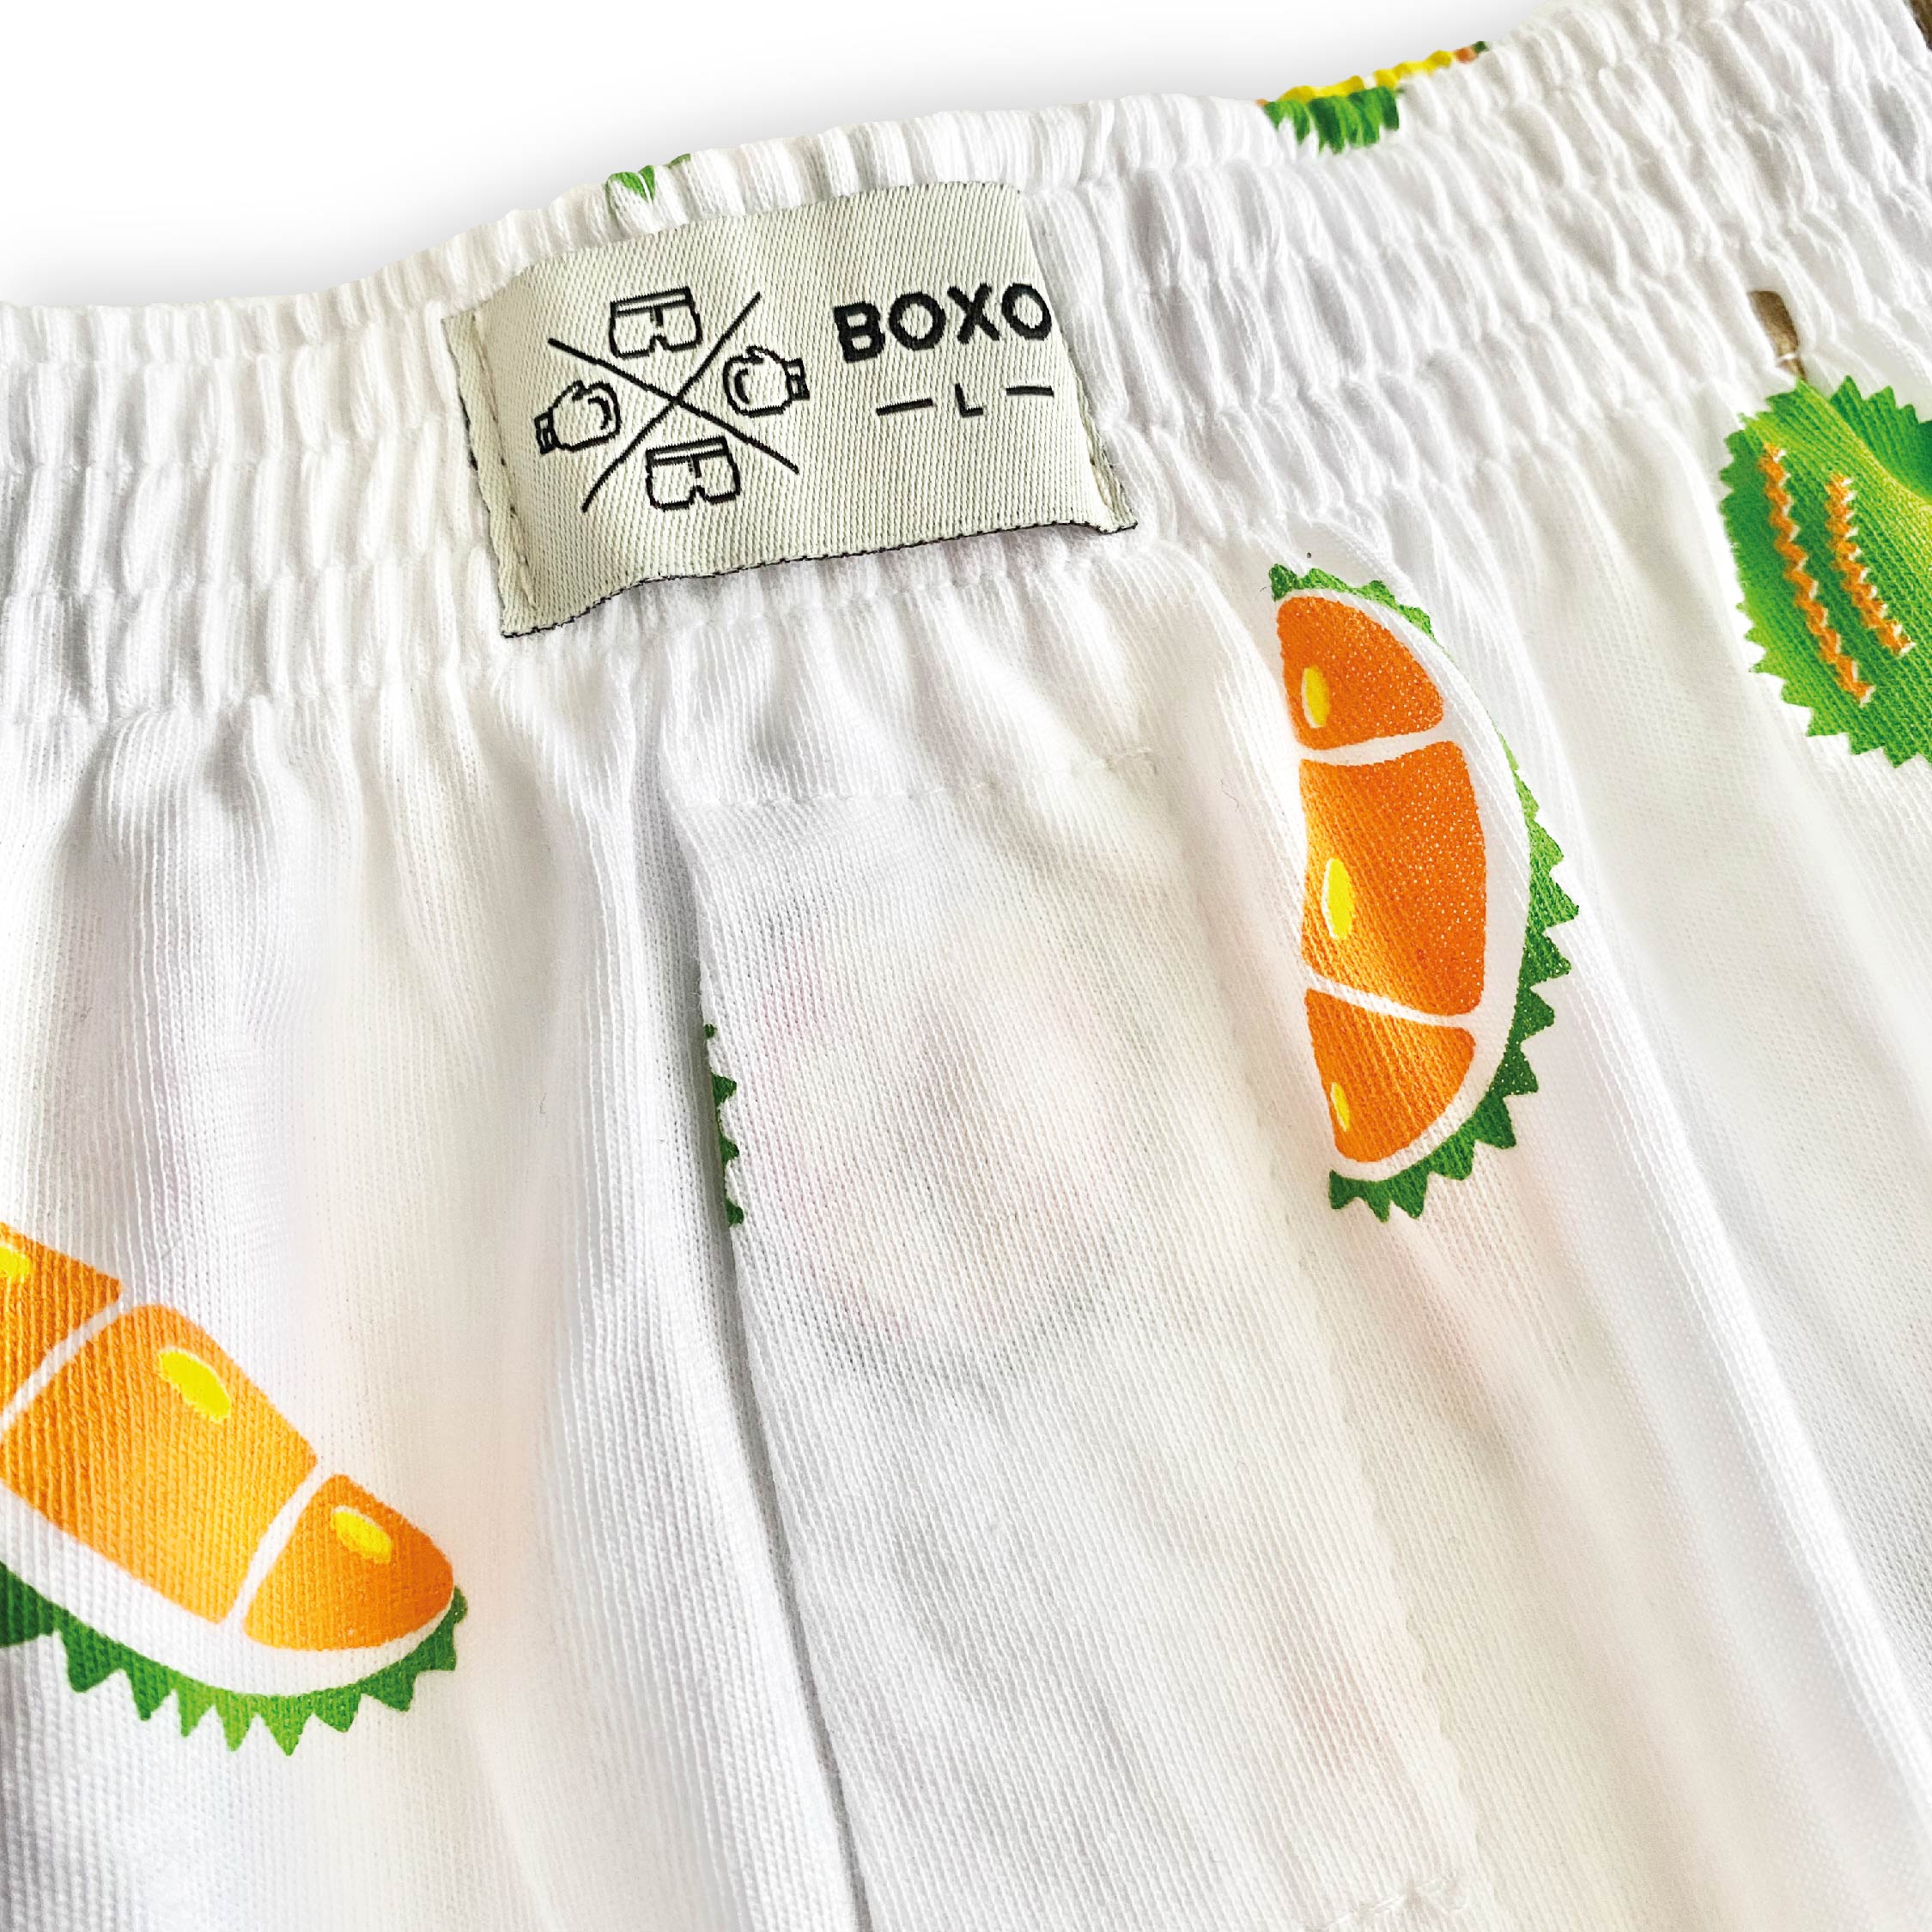 White Durian King Fruit Boxer - BOXO GOBOXER 